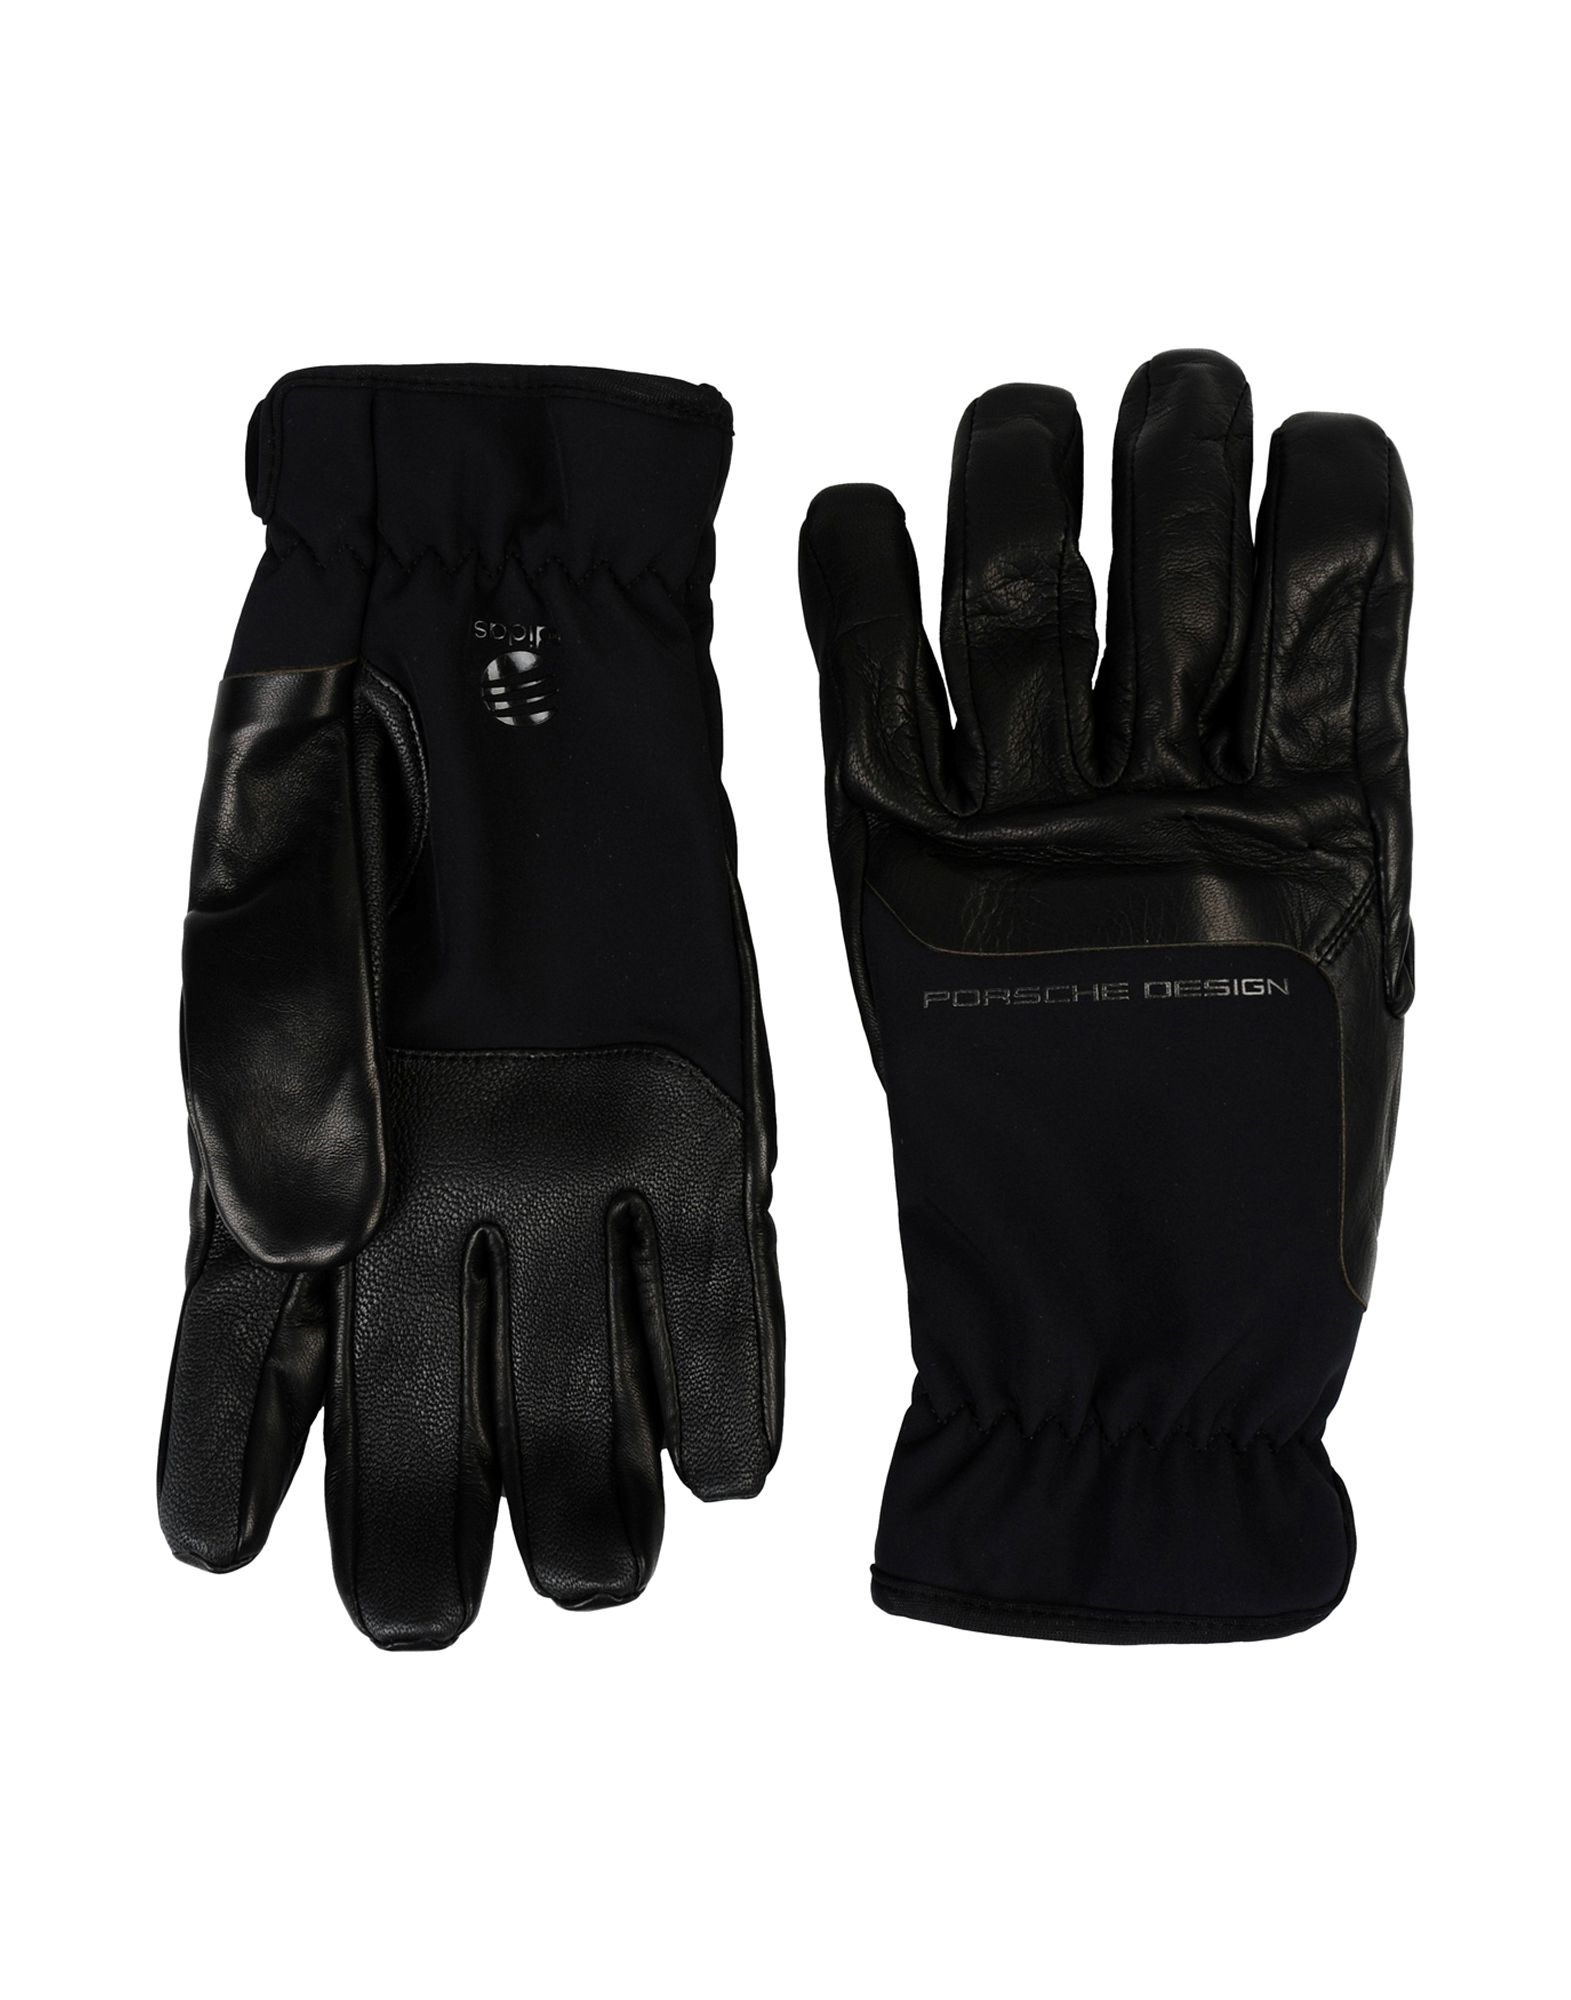 adidas porsche design gloves